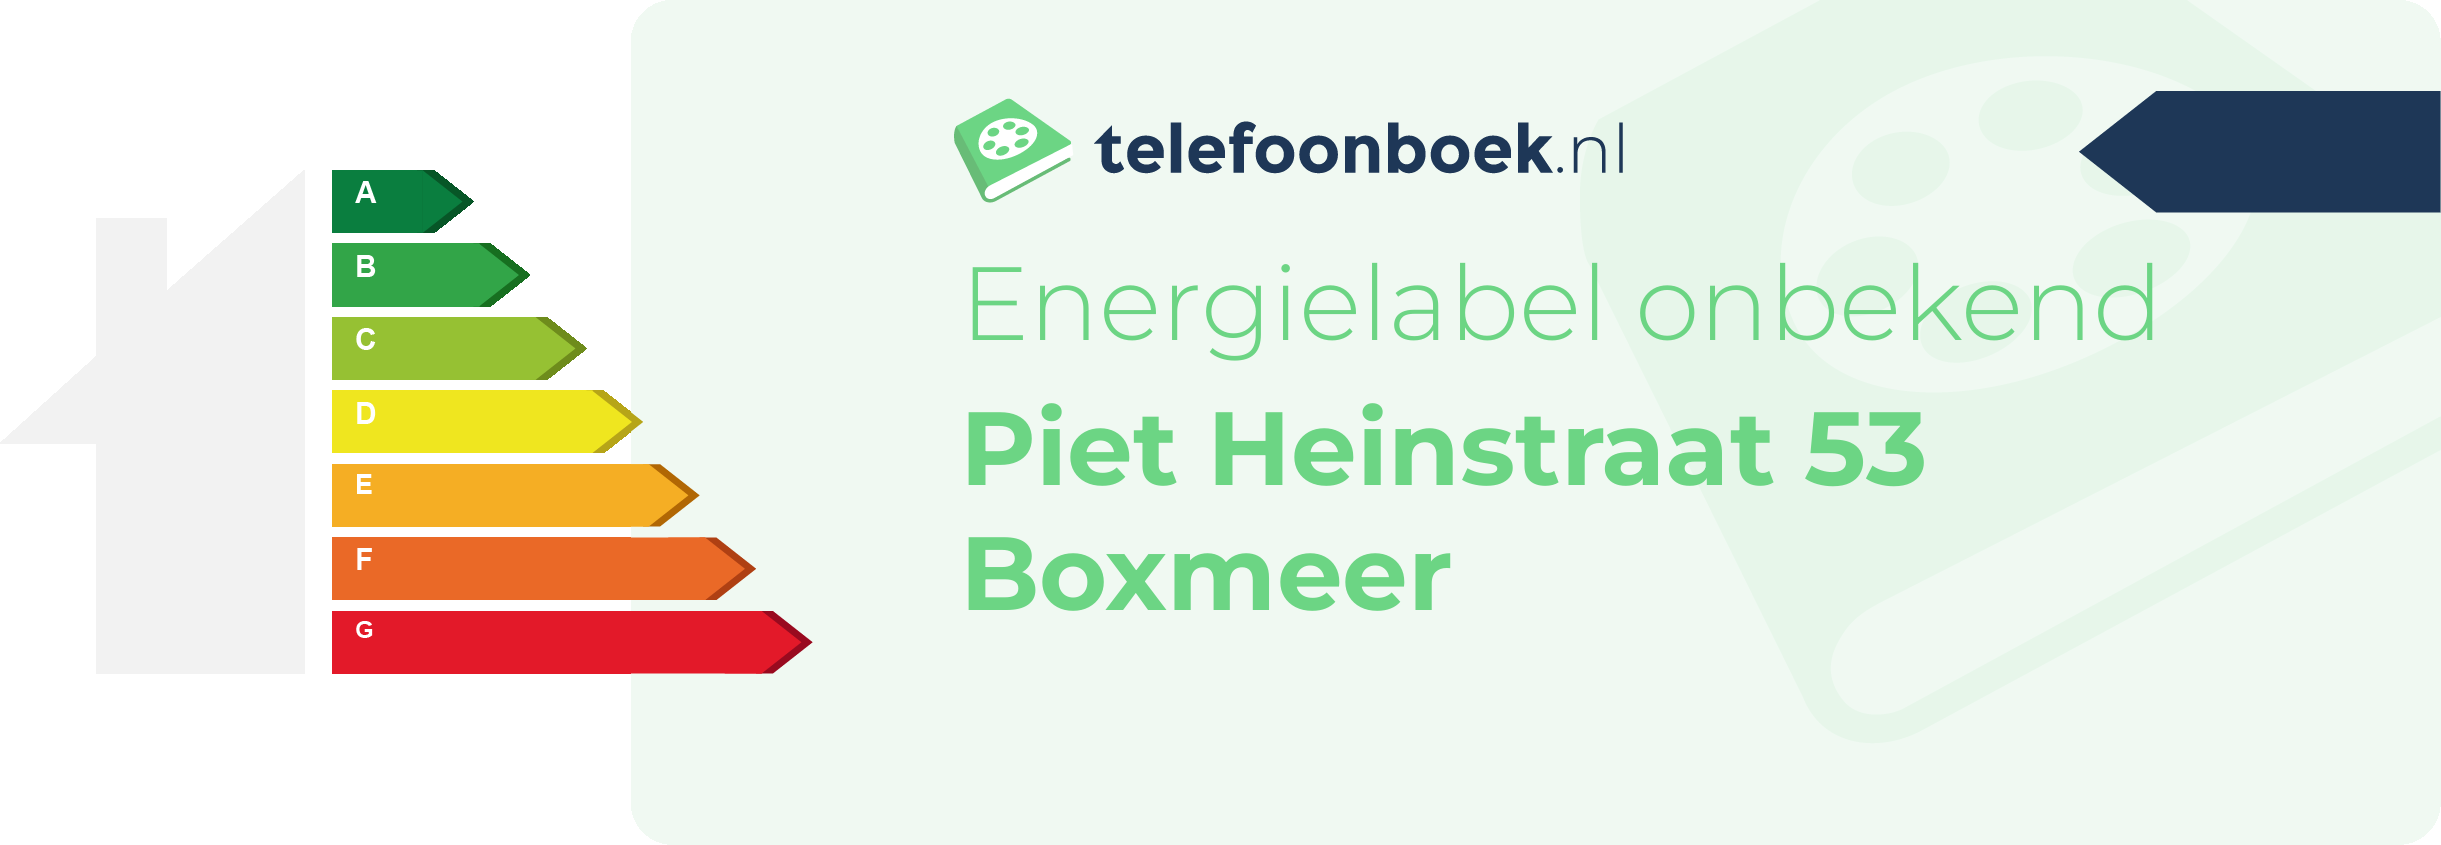 Energielabel Piet Heinstraat 53 Boxmeer